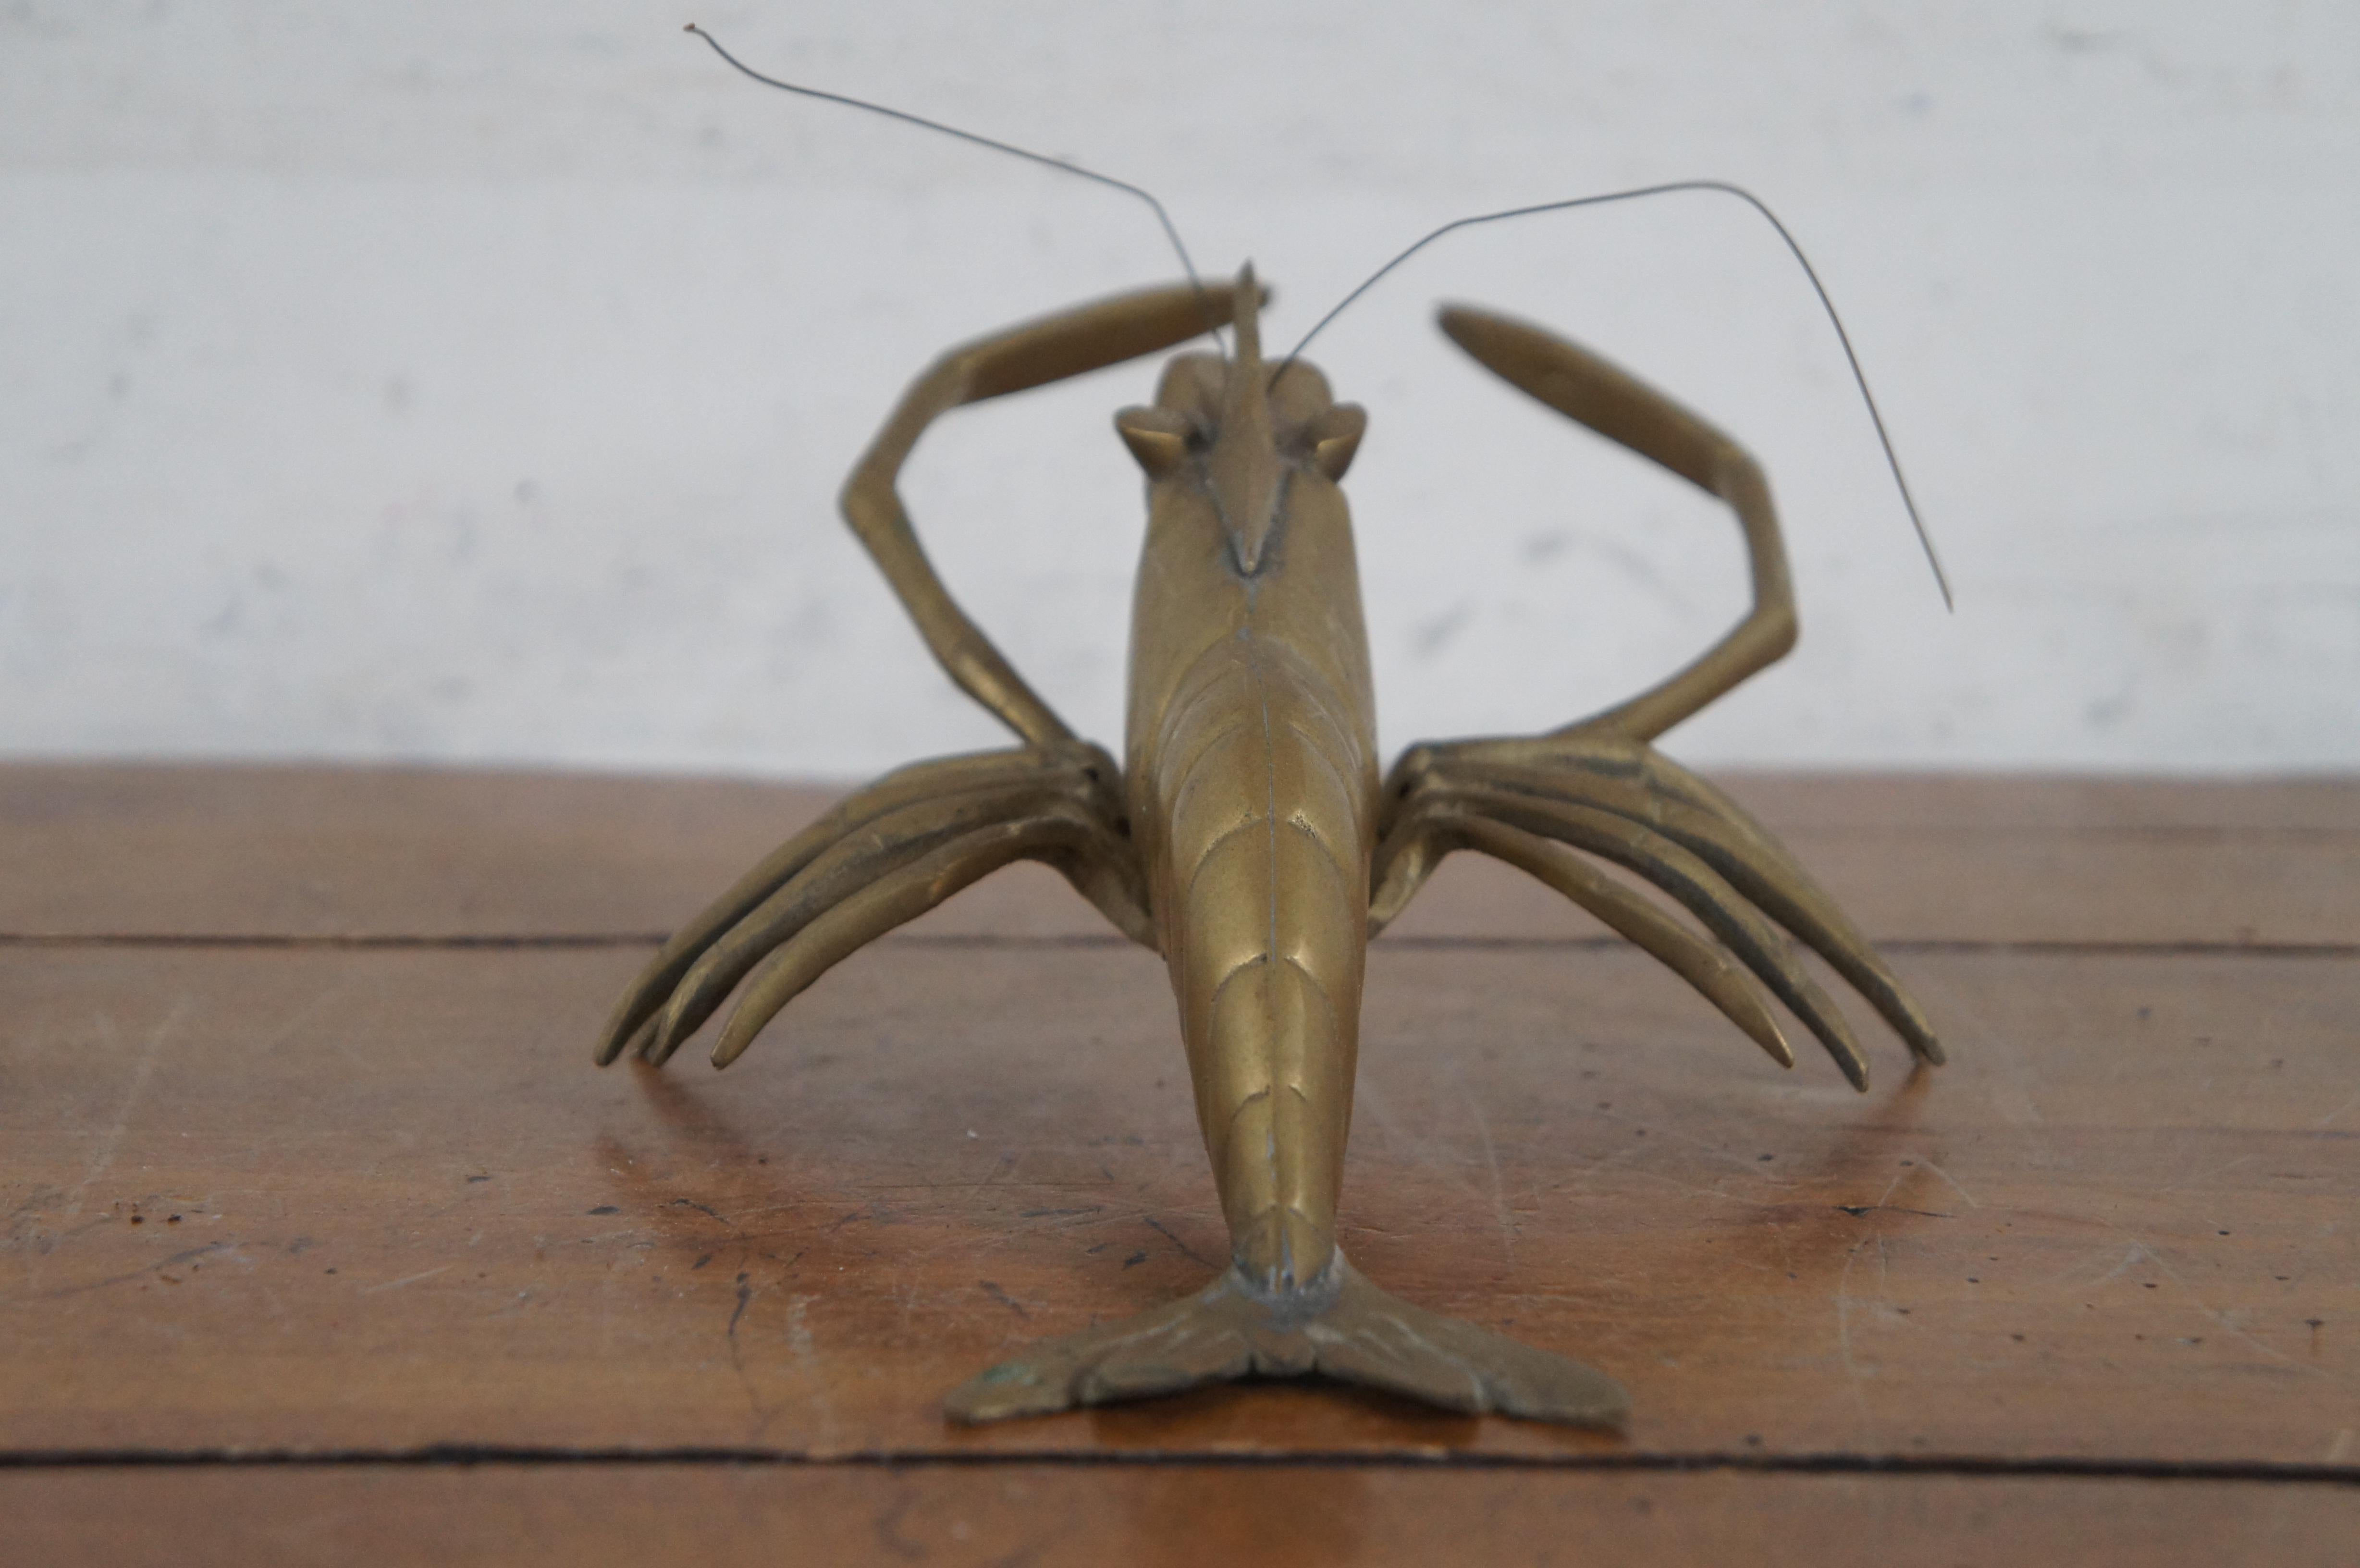 Wandbehang aus Messing mit Crawfish Crayfish Prawn Lobster 12